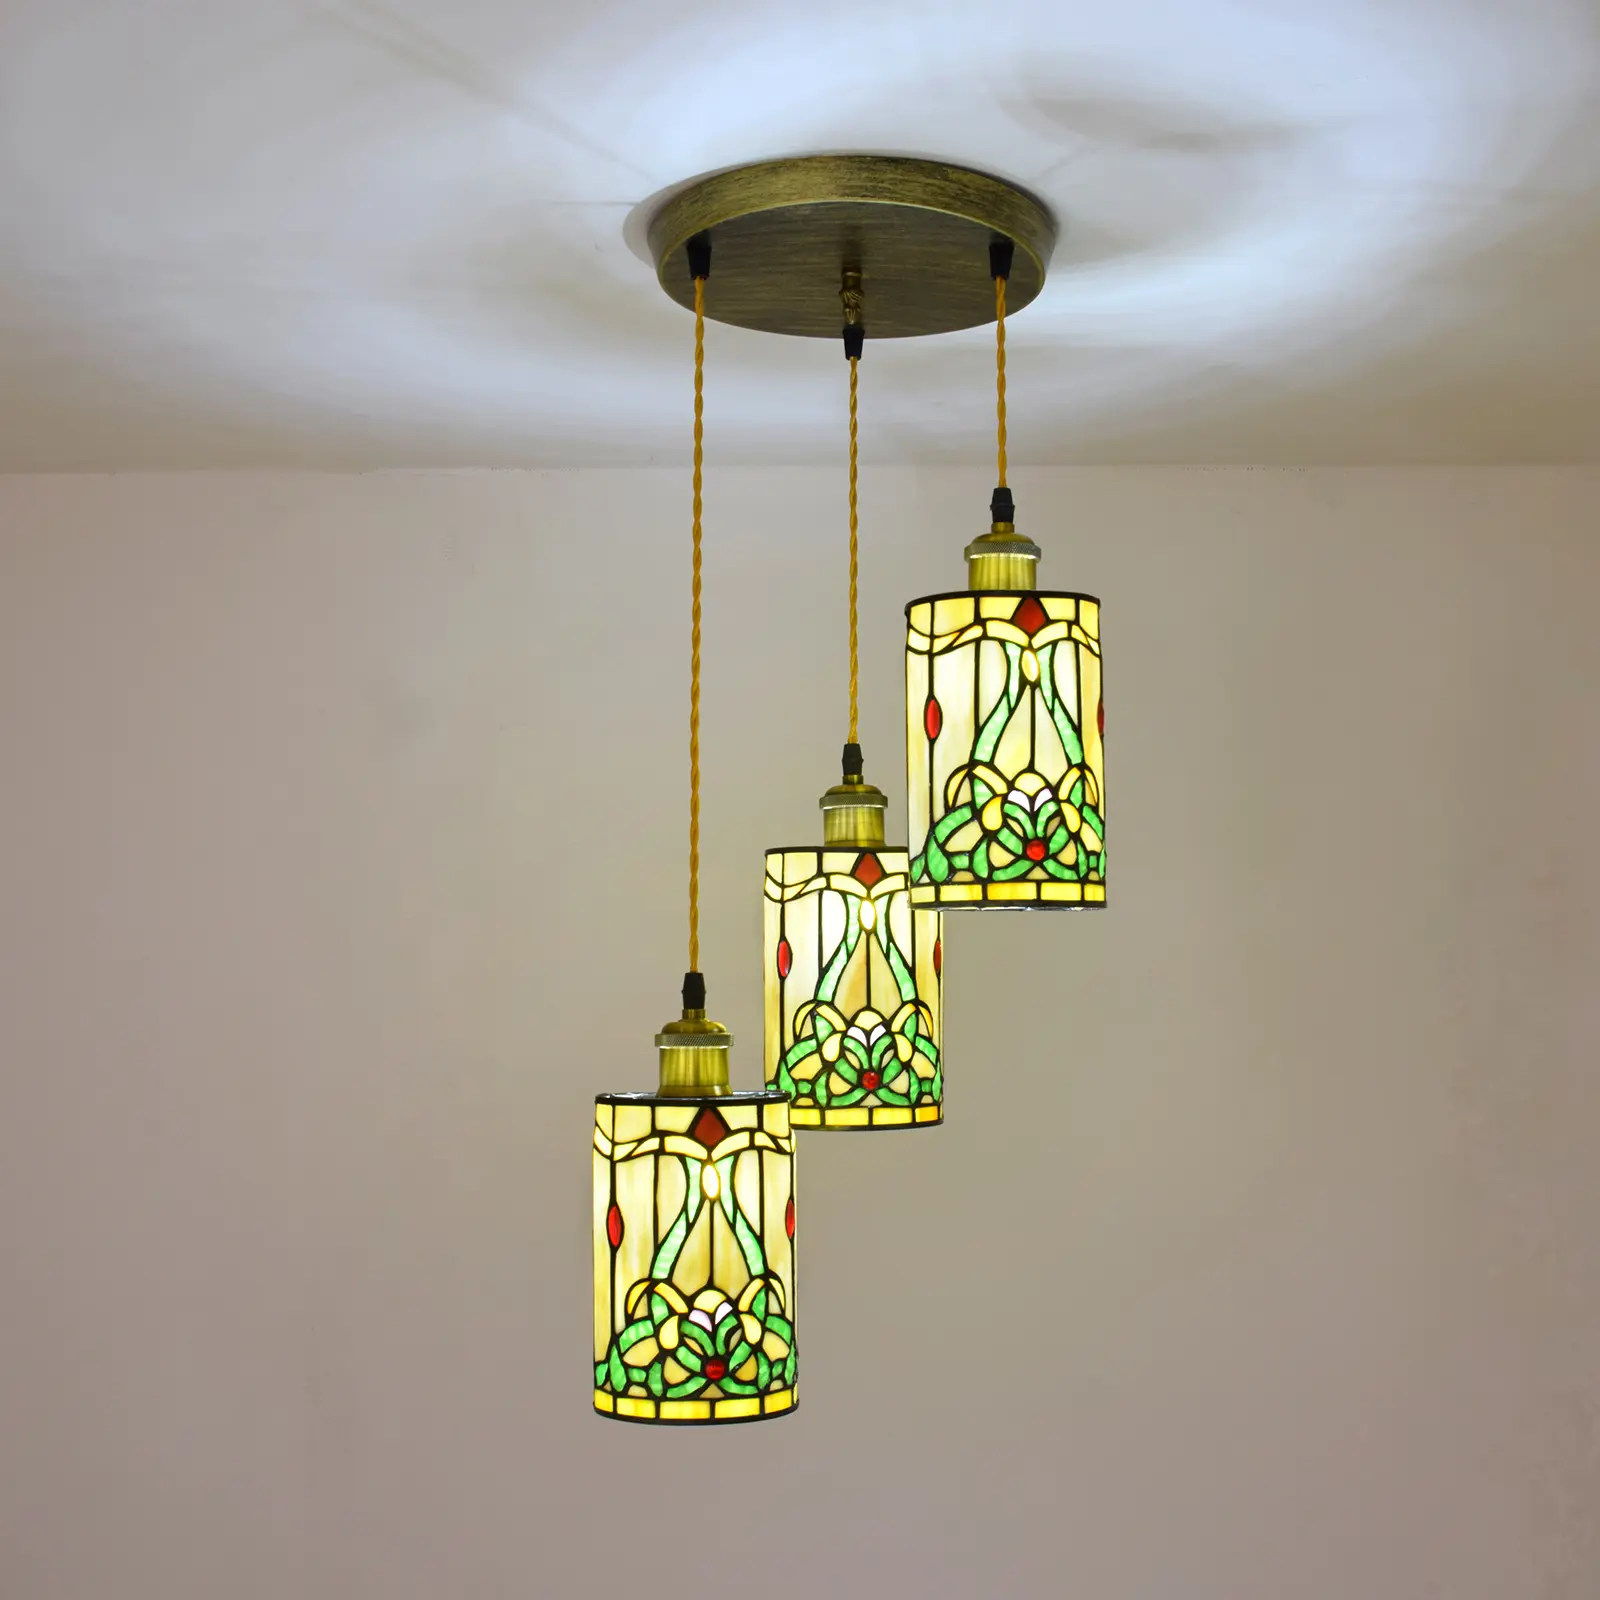 D204 orta yüzyıl modern kolye ışık Vintage retro tiffany vitray luminaria teto ev dekorasyon için asılı lambalar